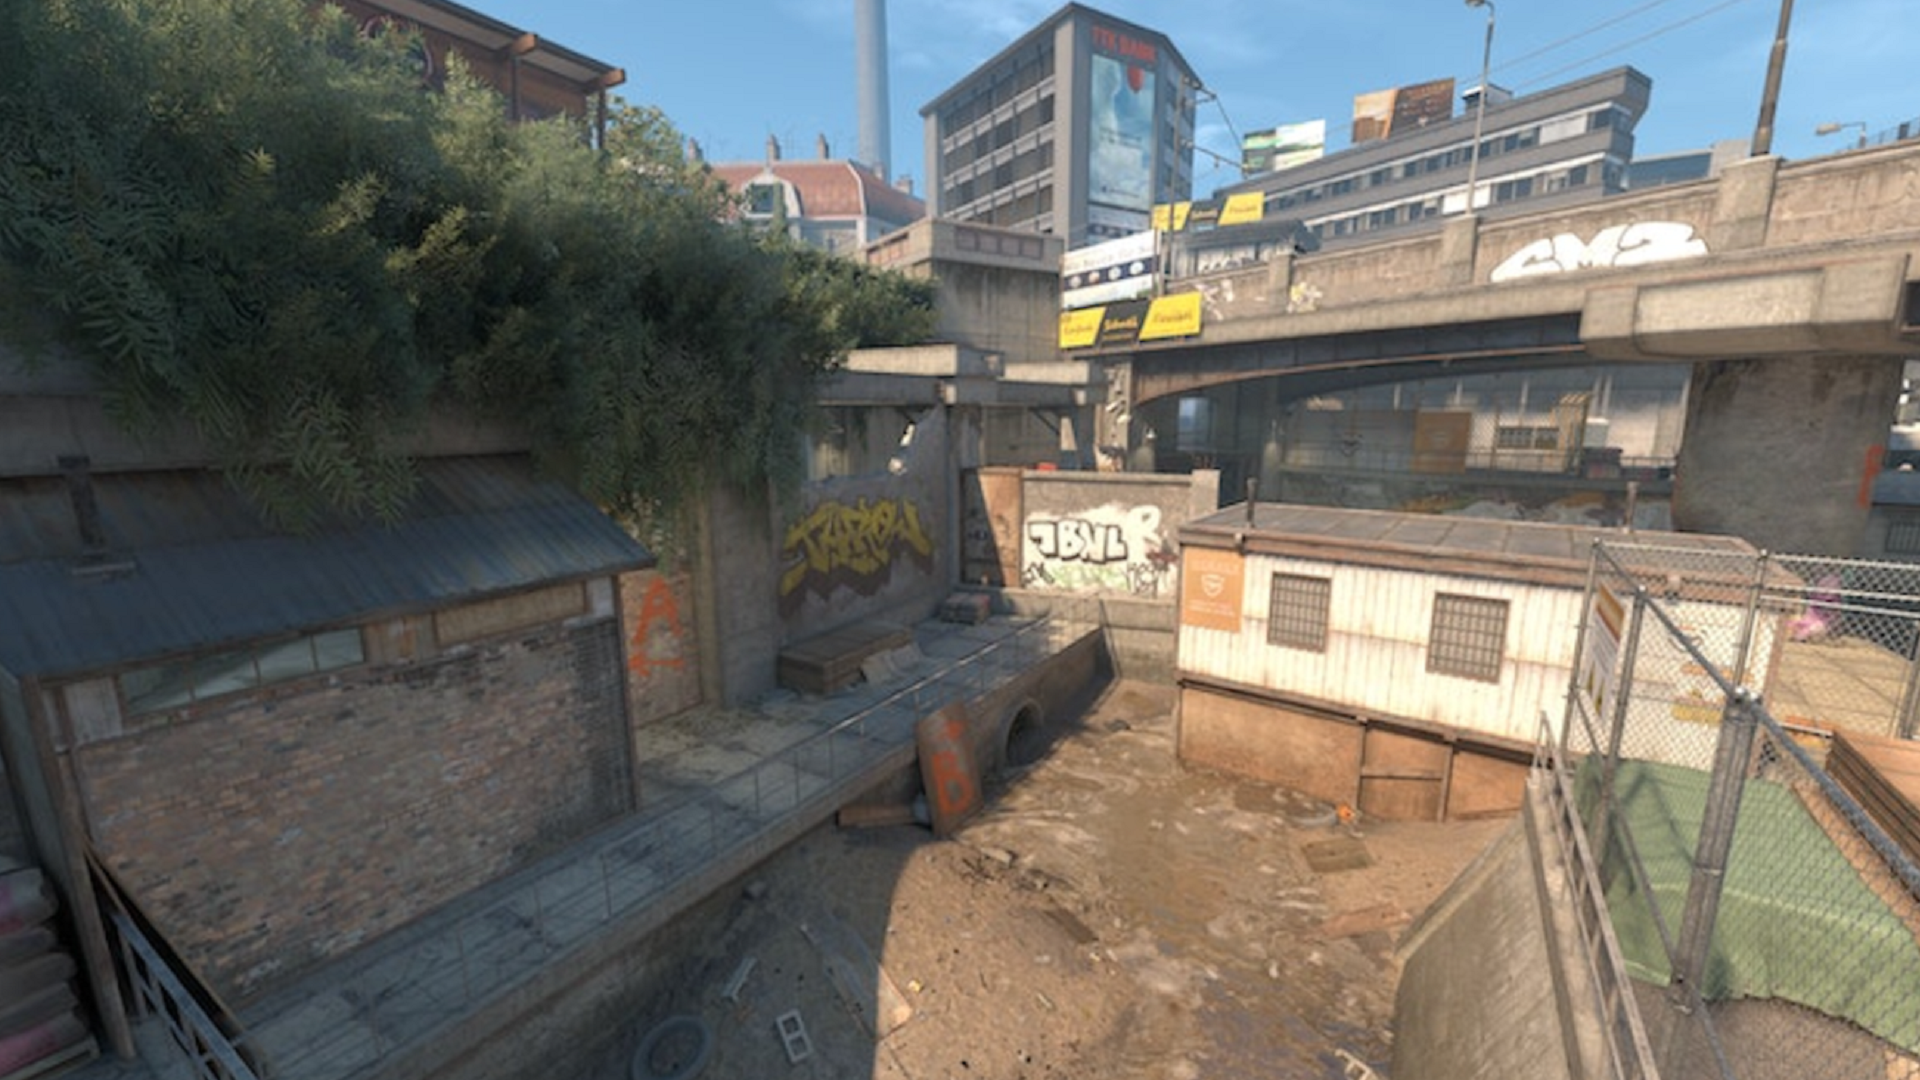 Дизайнер уровней Counter-Strike использовал модель кастрюли при проектировании Overpass